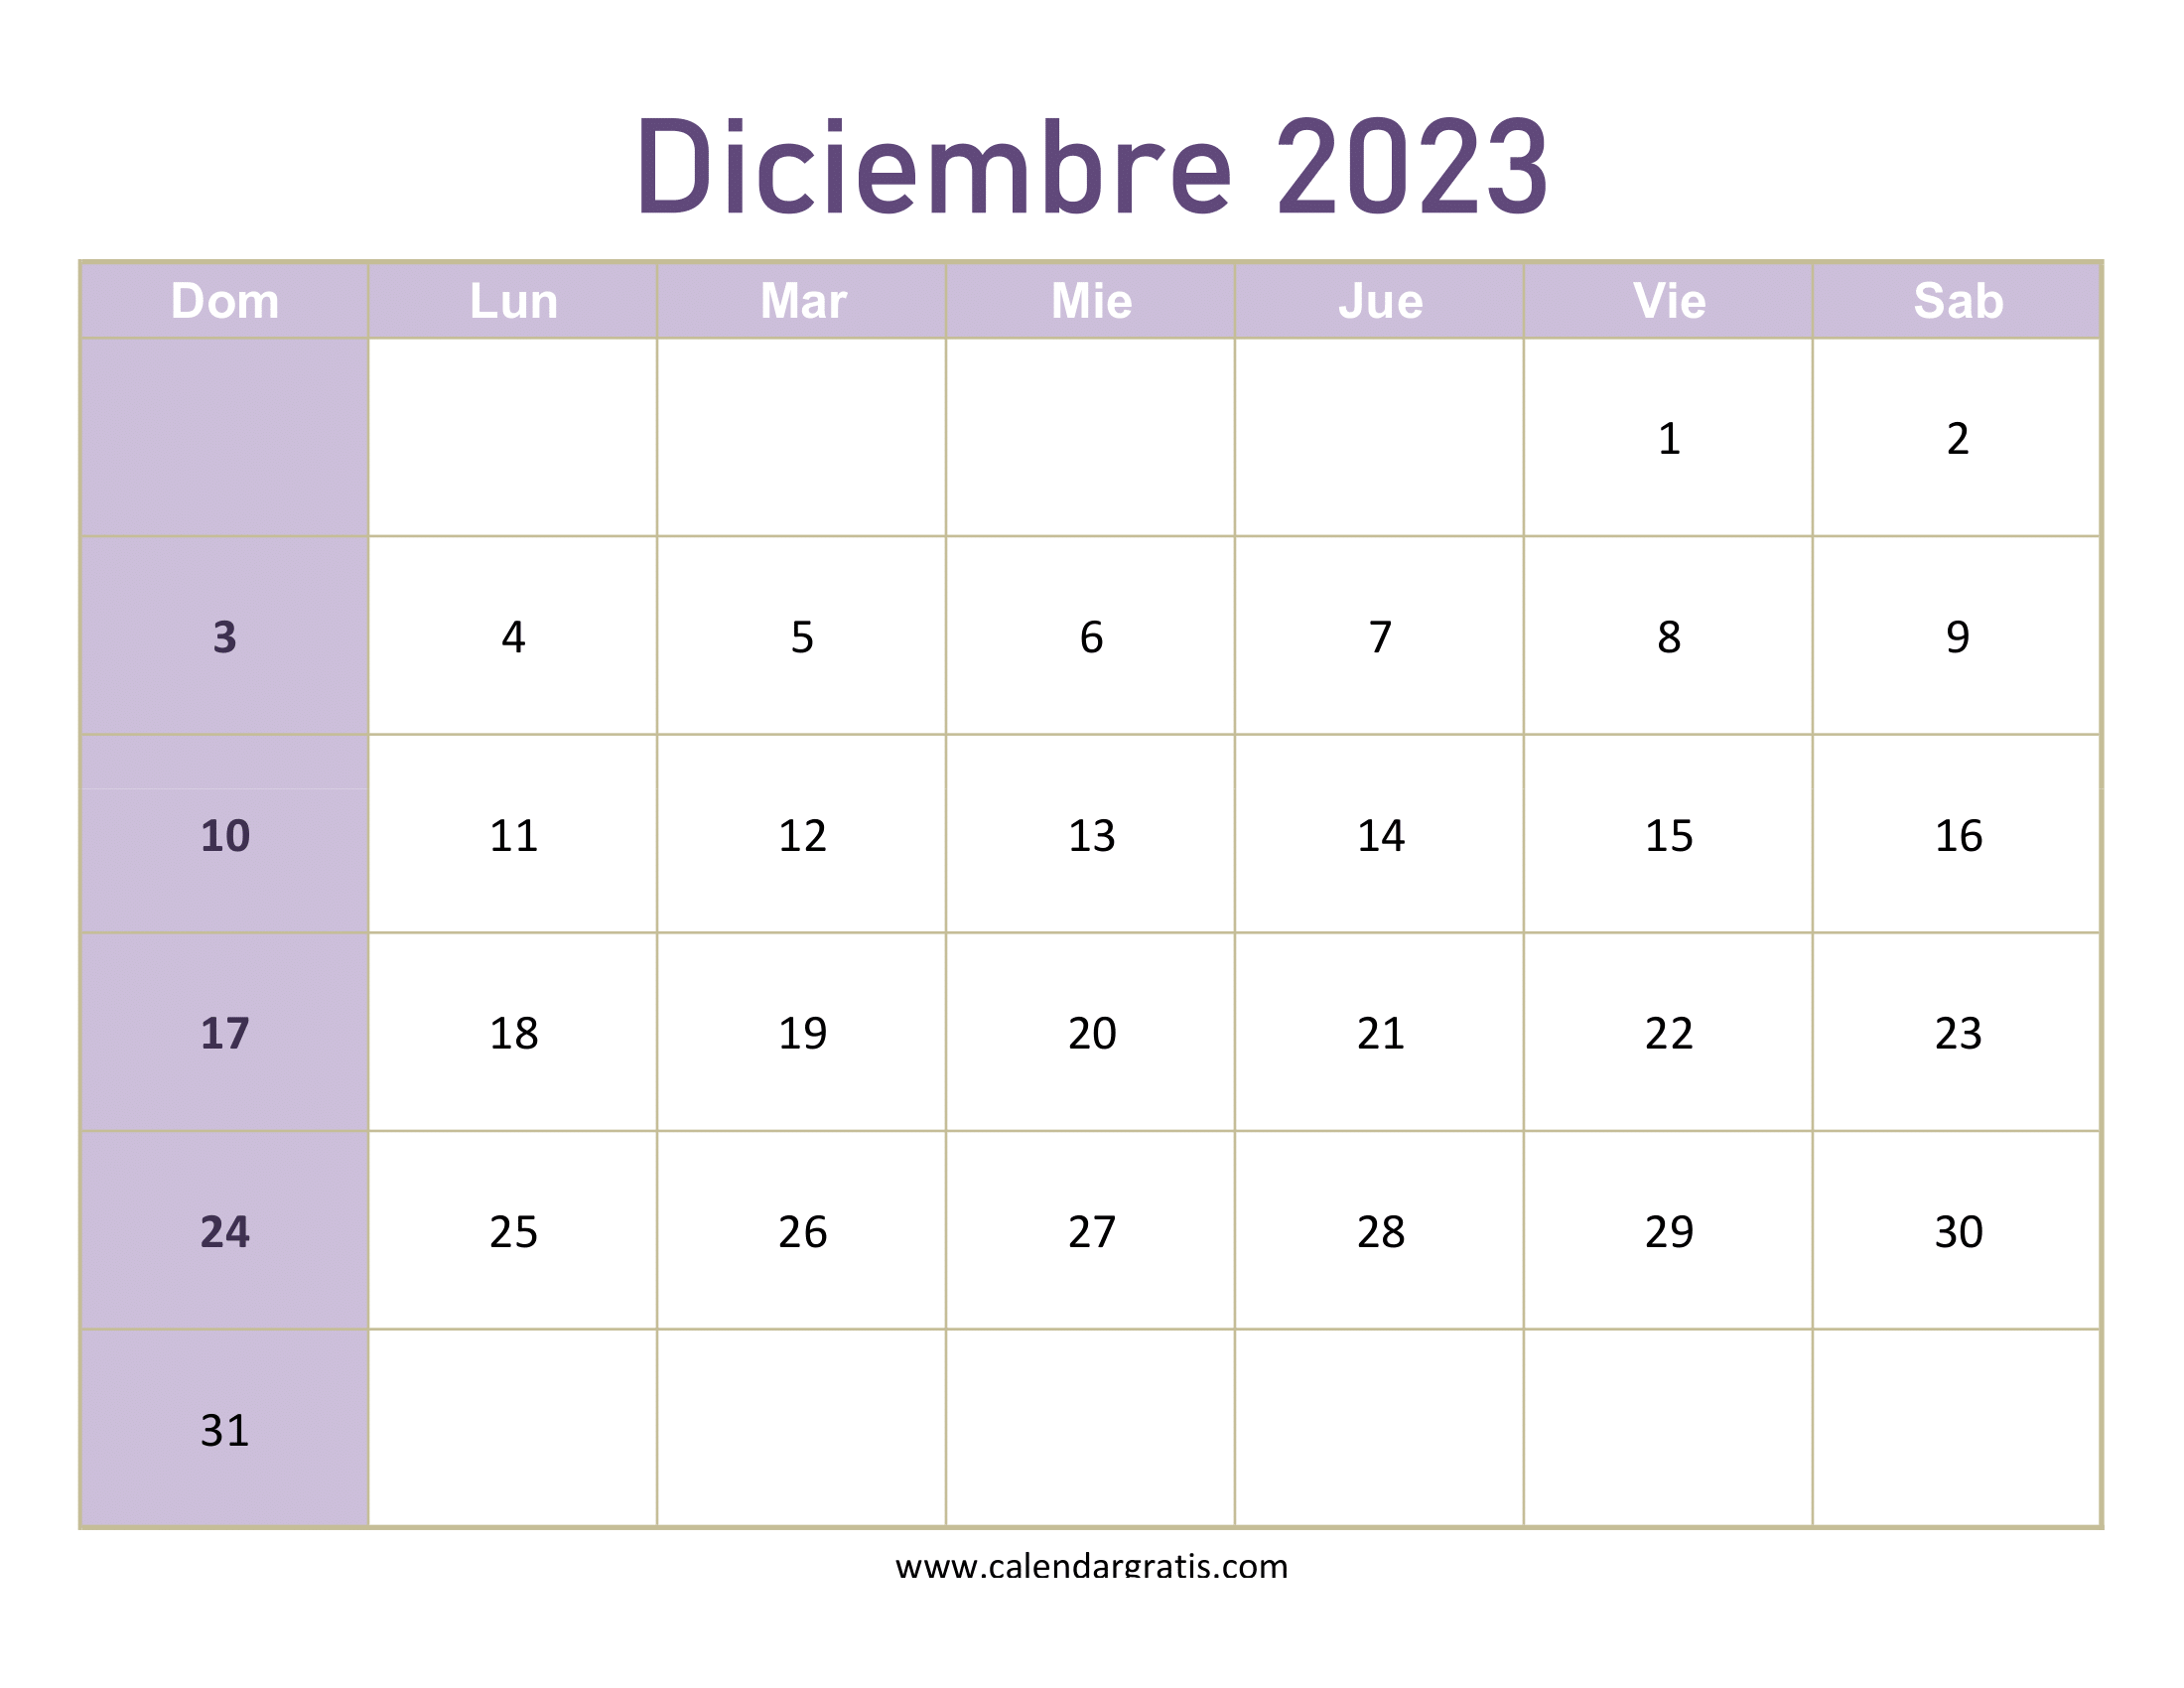 Visualiza tu mes con el calendario diciembre 2023  para imprimir